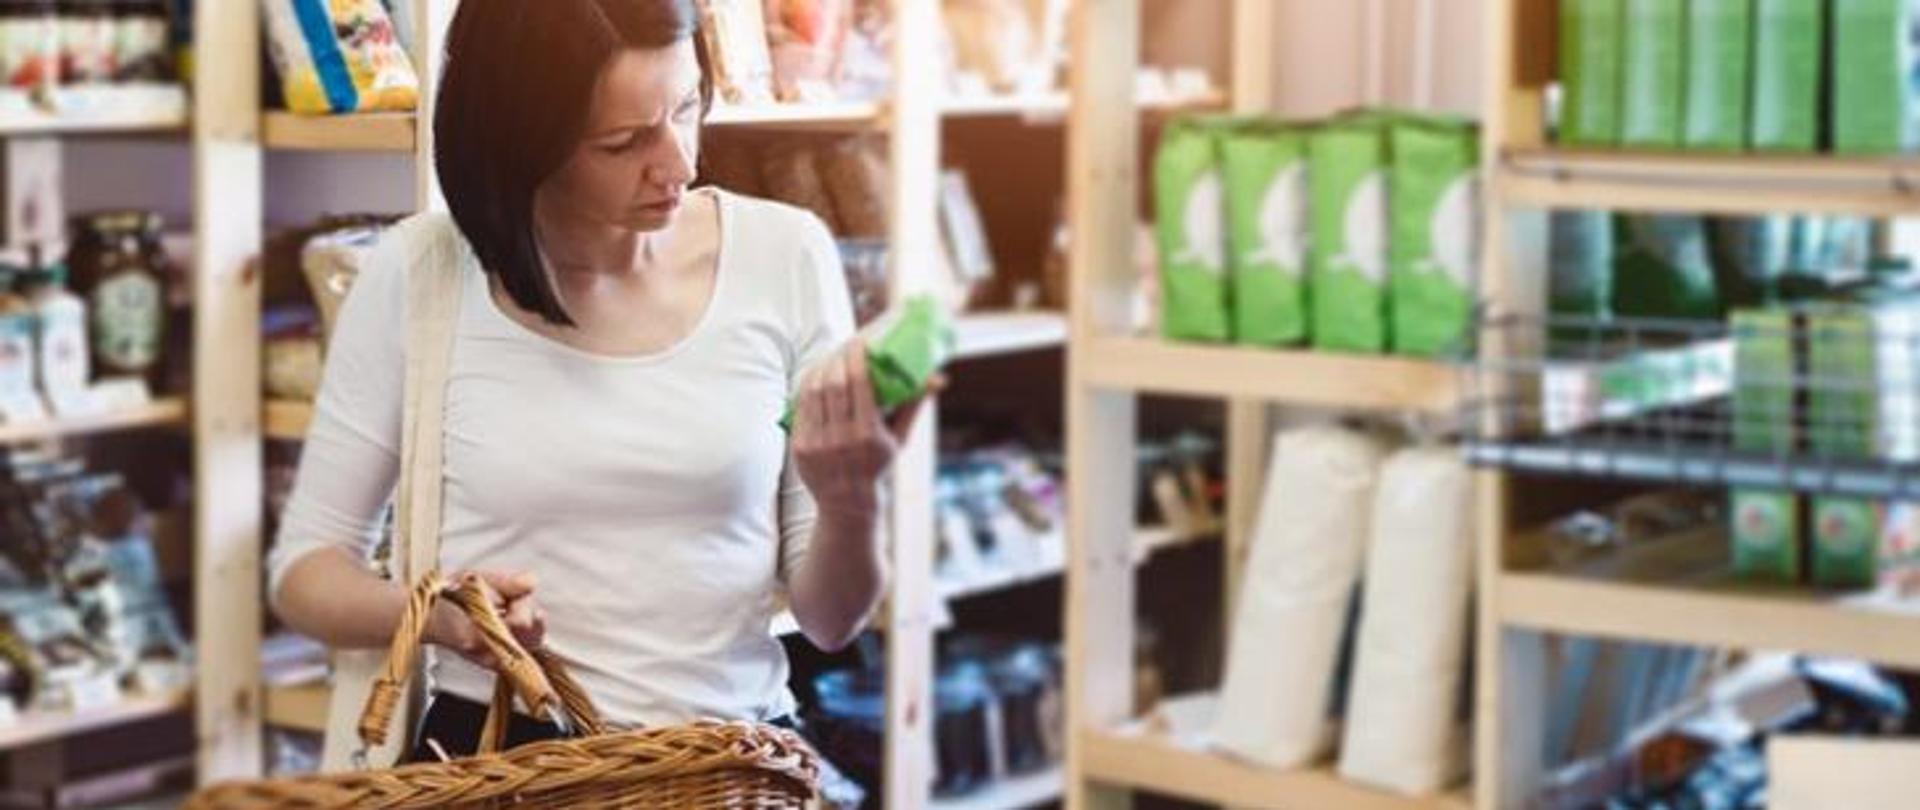 kobieta z koszykiem w sklepie czyta etykietę produktu